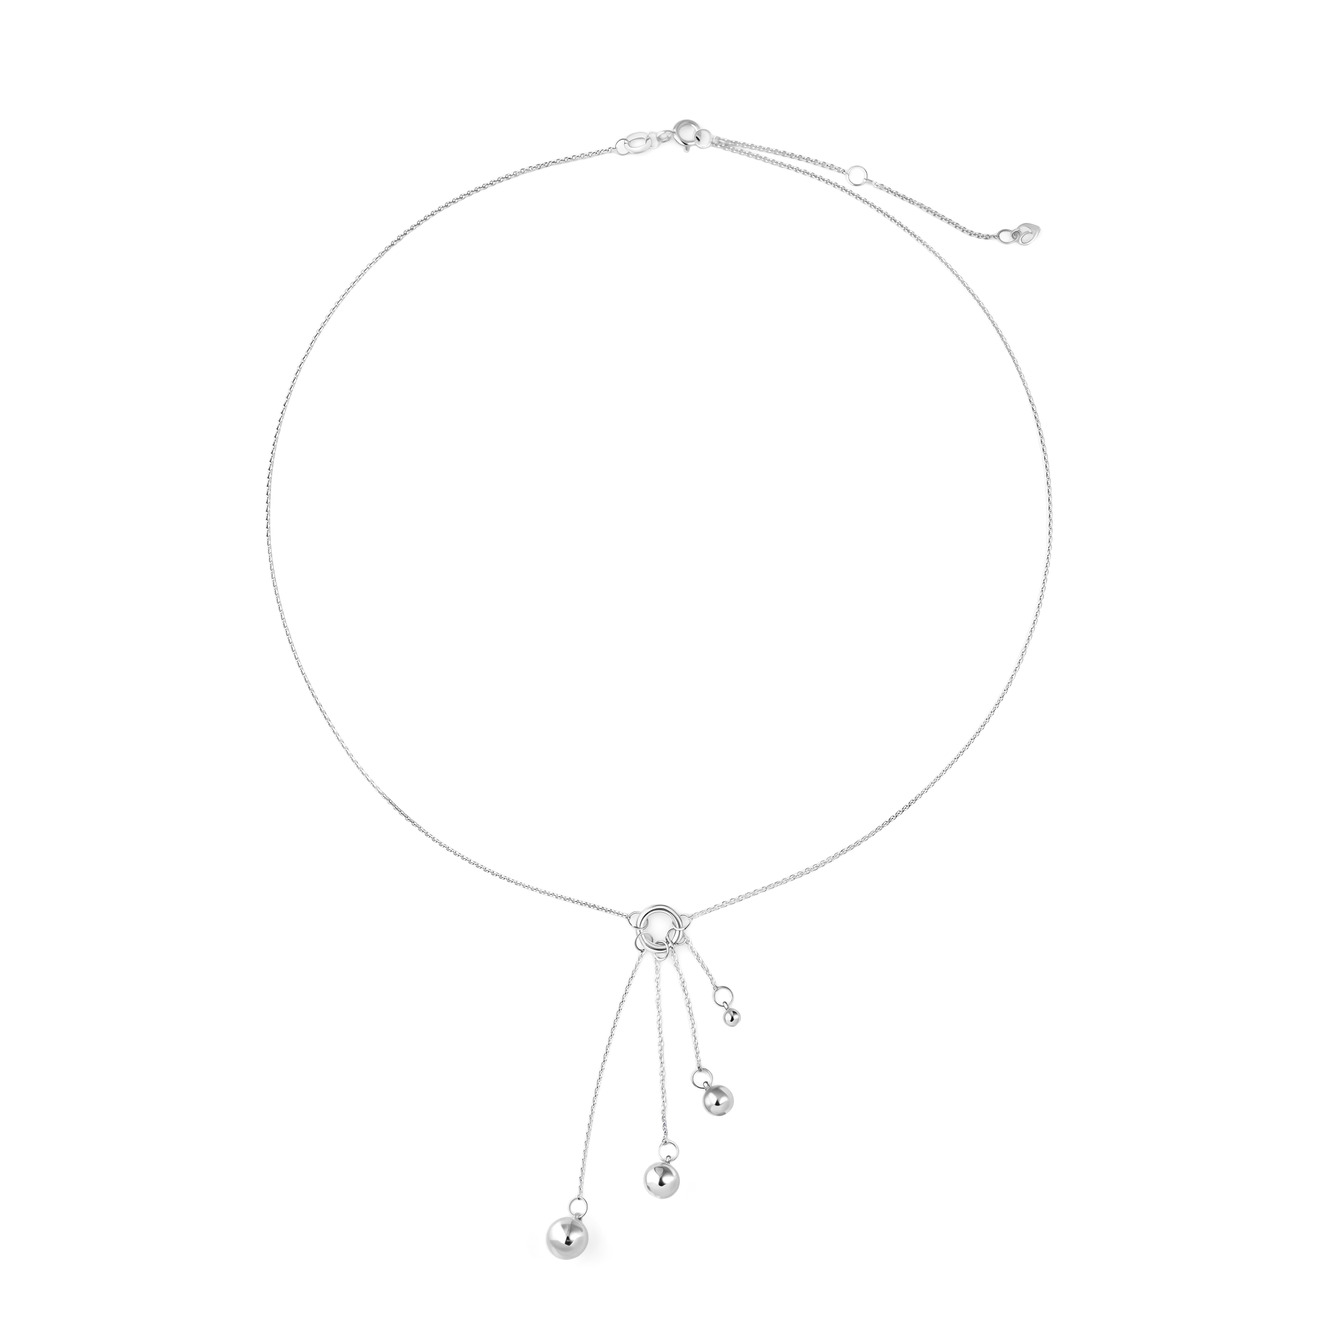 УРА jewelry Подвеска Шары из серебра подвеска из серебра 94030181